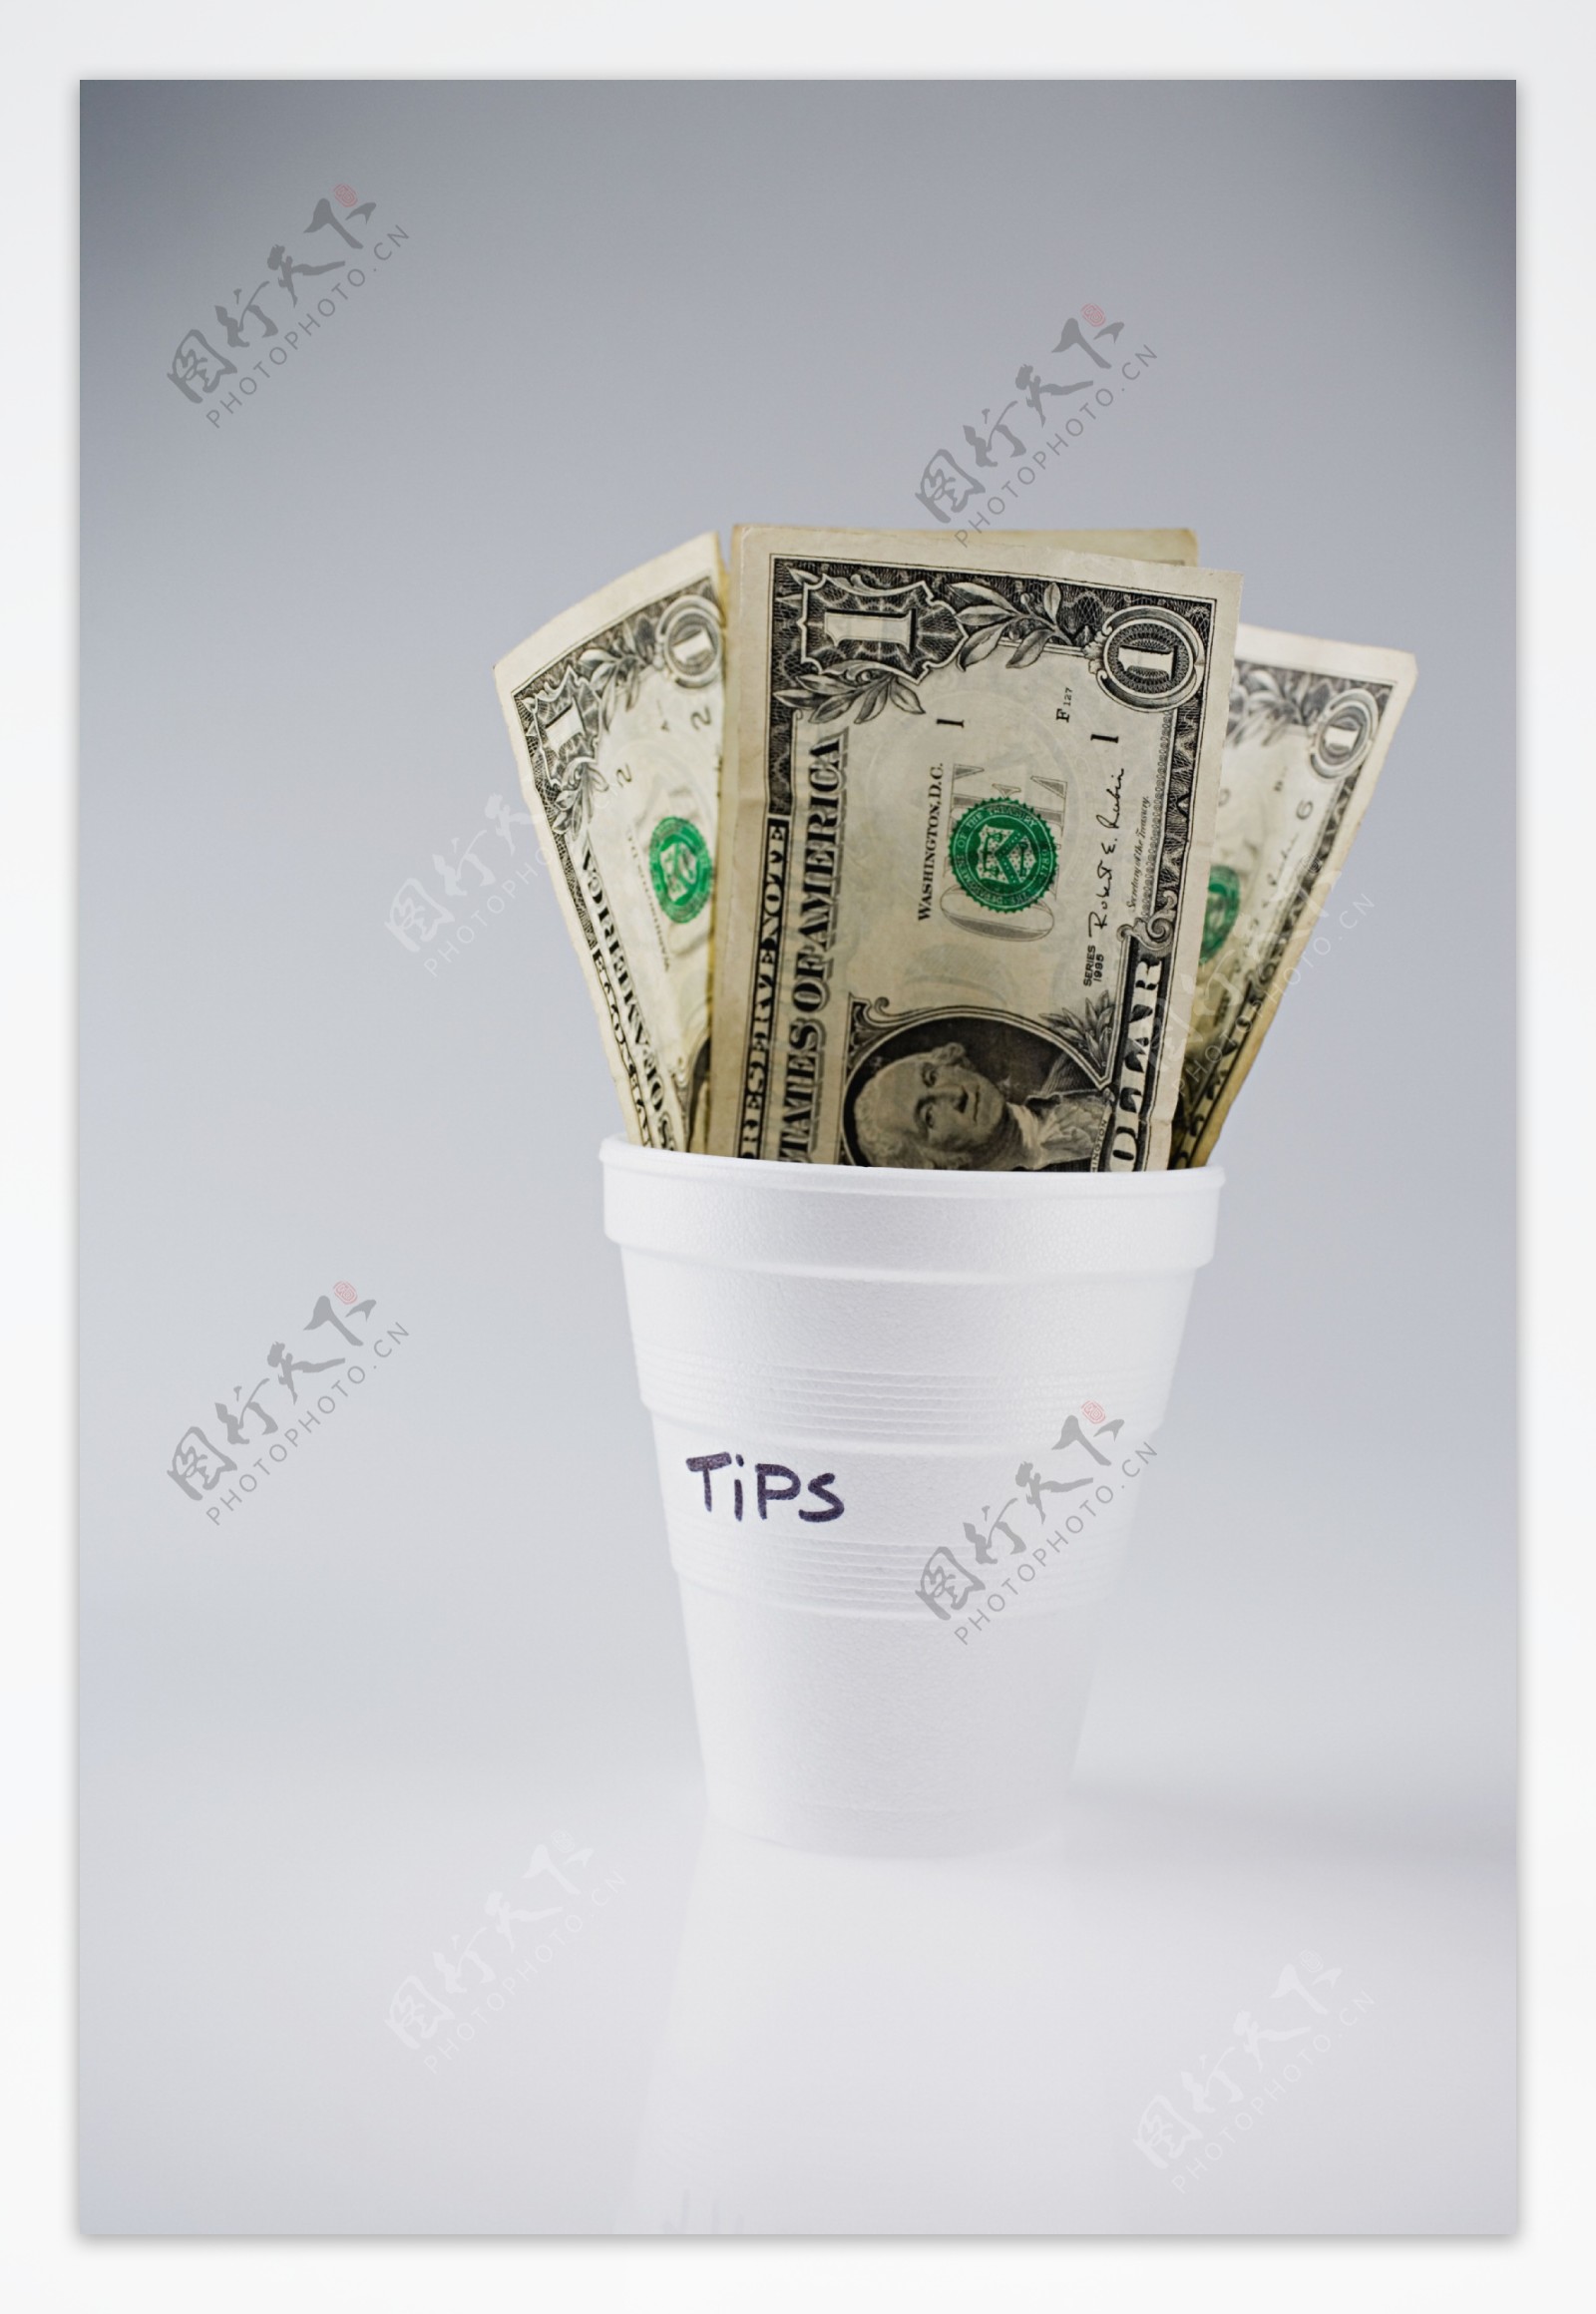 杯子里的美元钞票特写图片